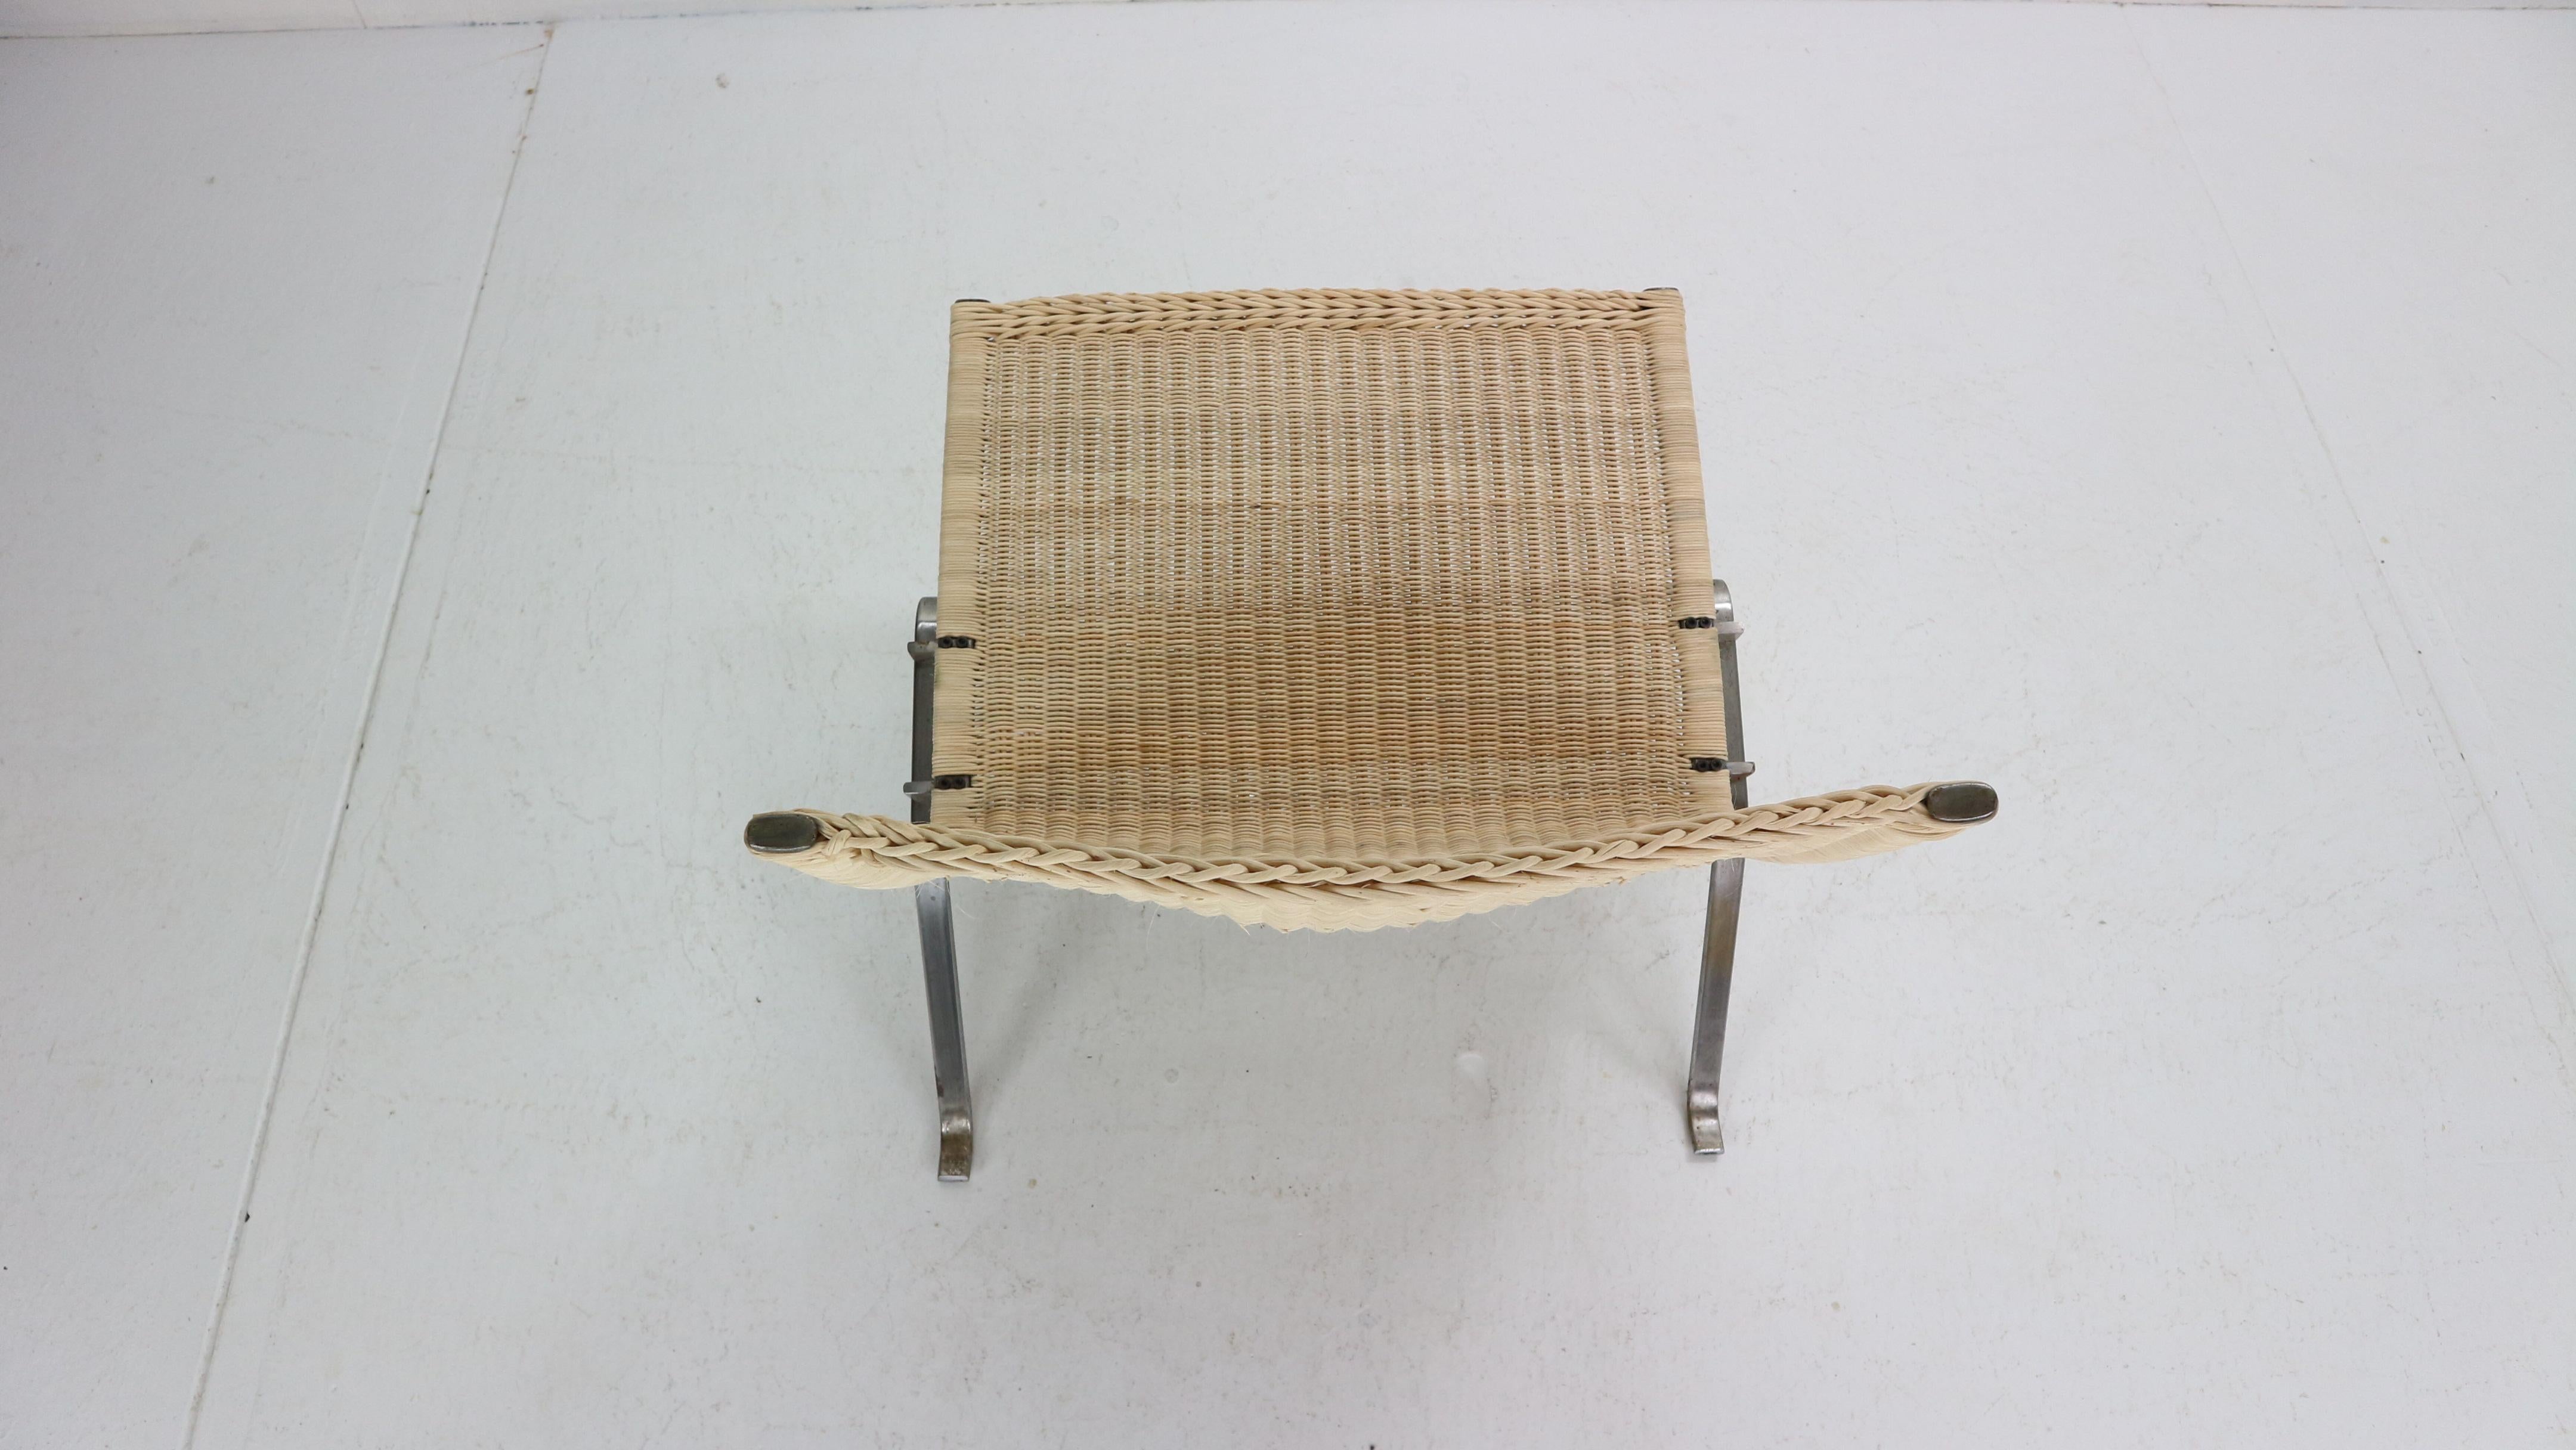 Woven Poul Kjaerholm PK22 Easy Chair For E. Kold Christensen, 1956, Denmark